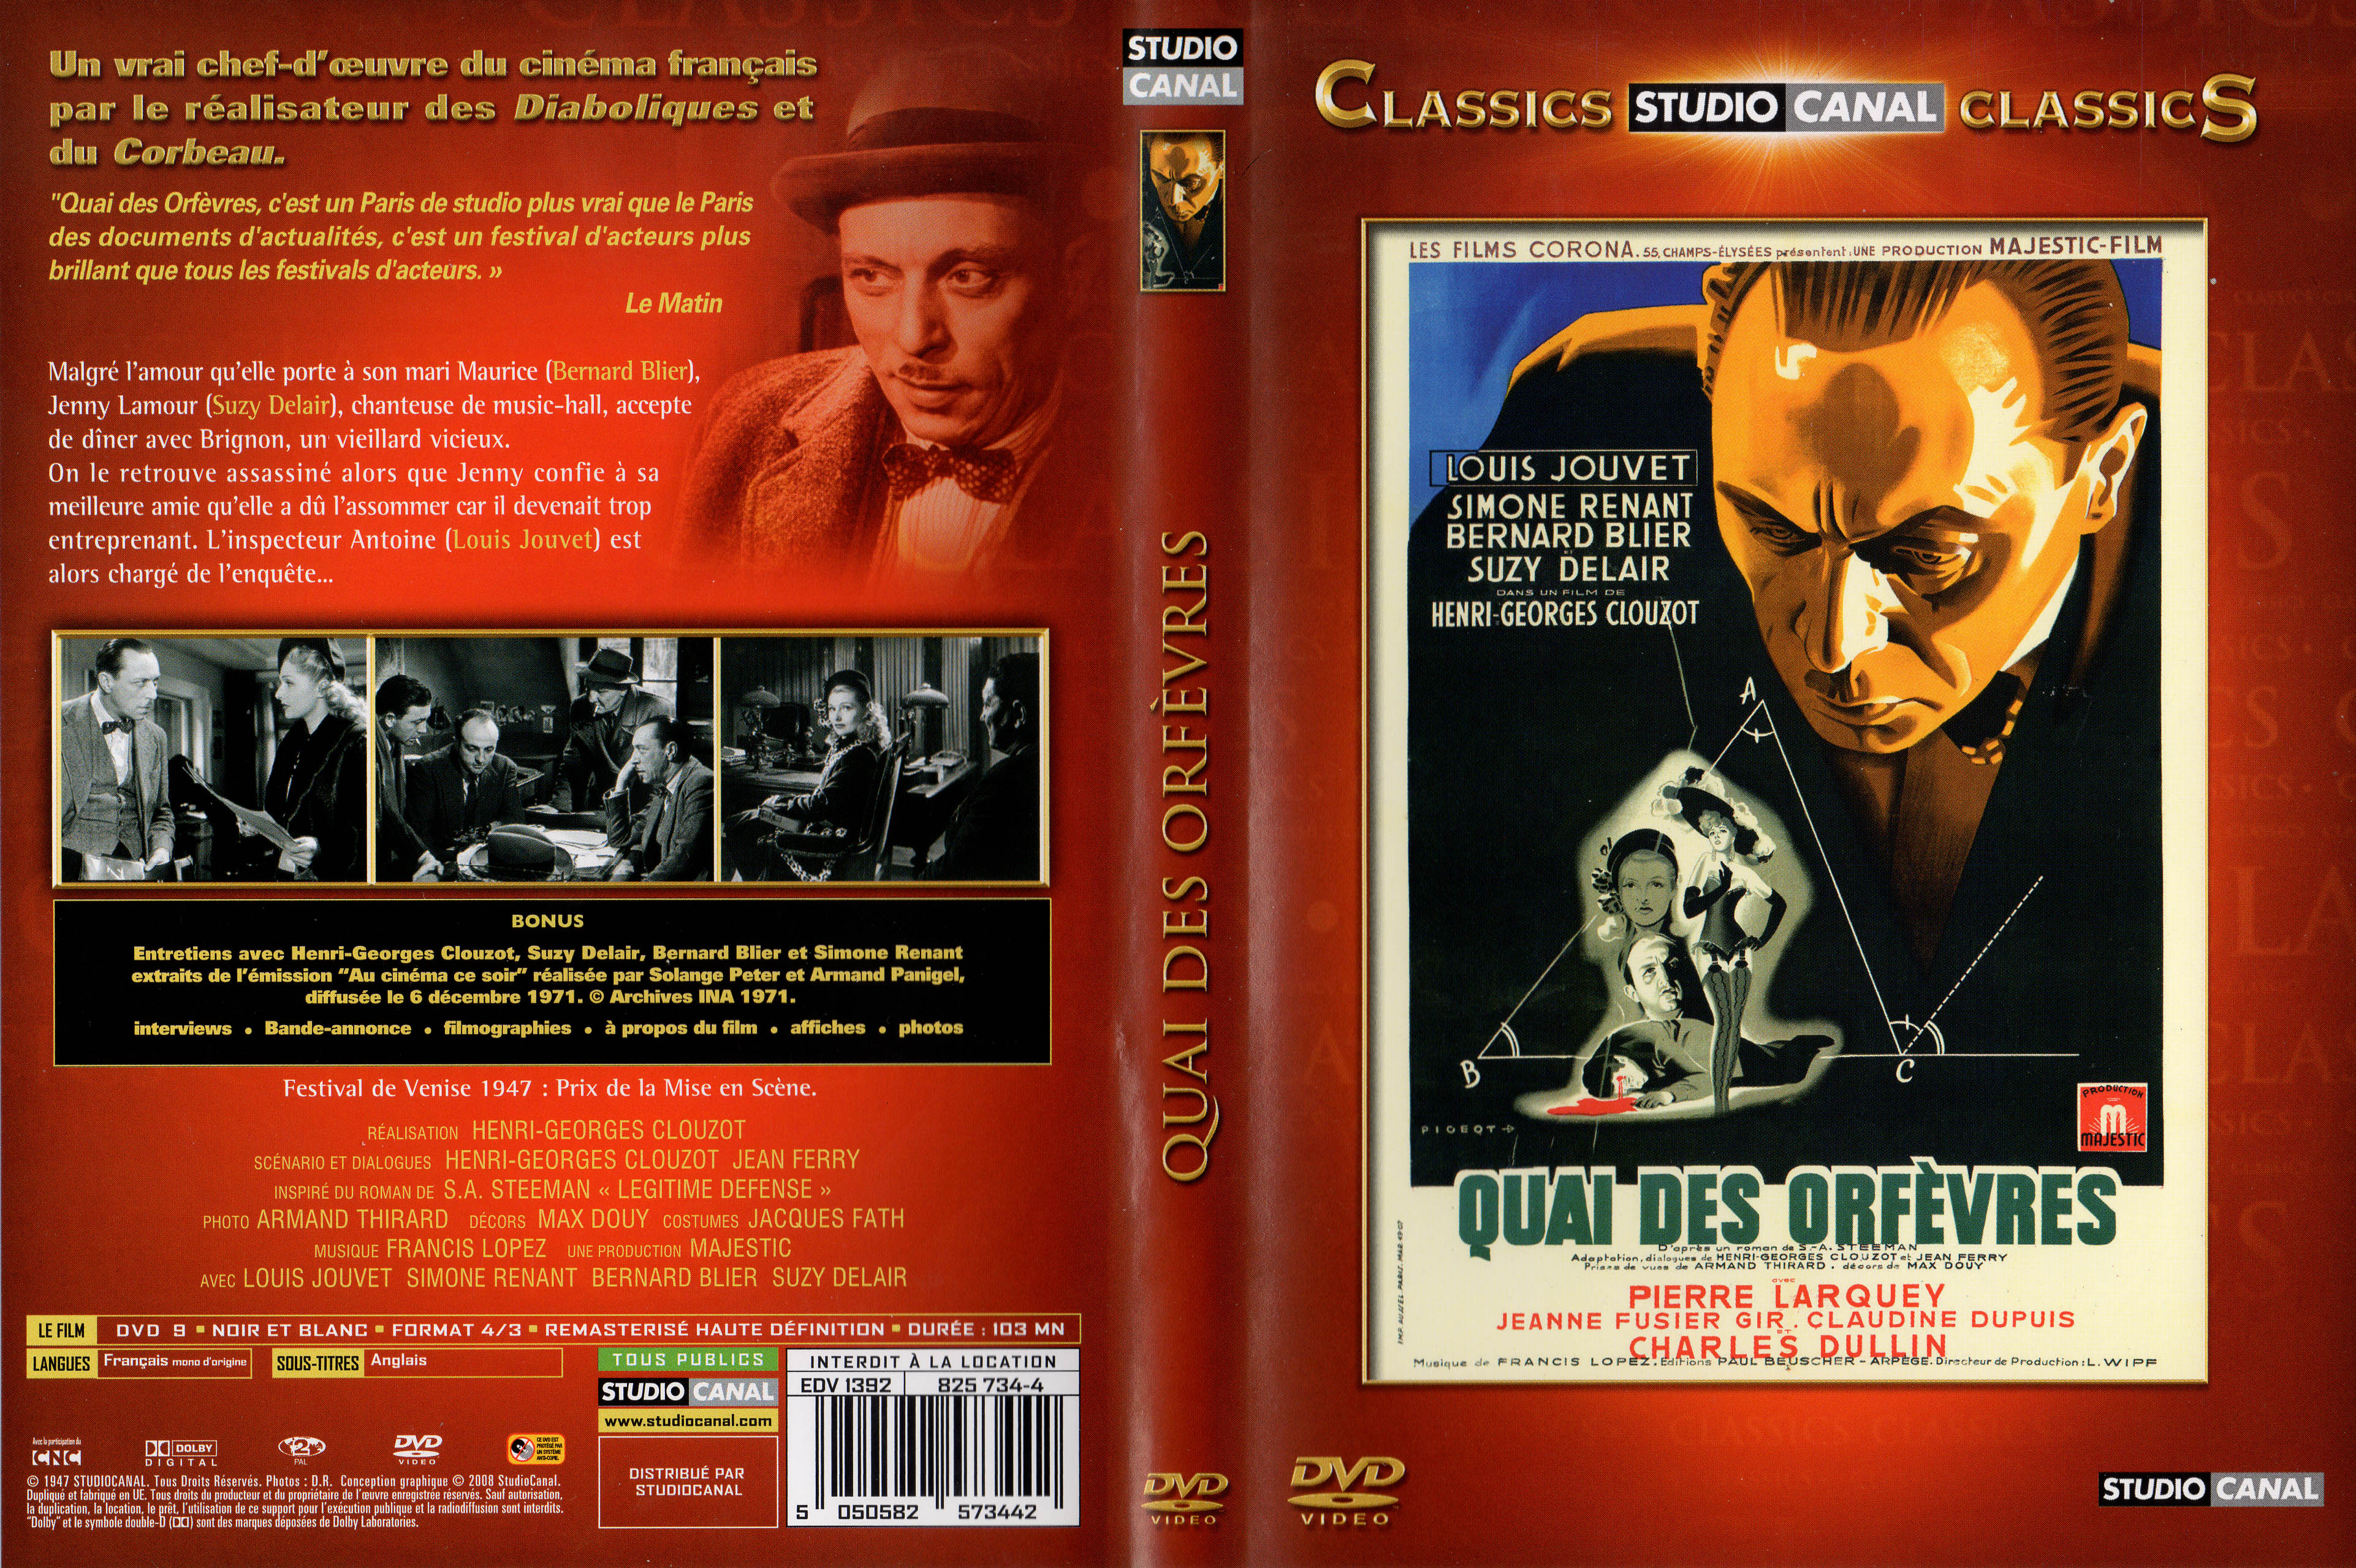 Jaquette DVD Quai des orfvres v3